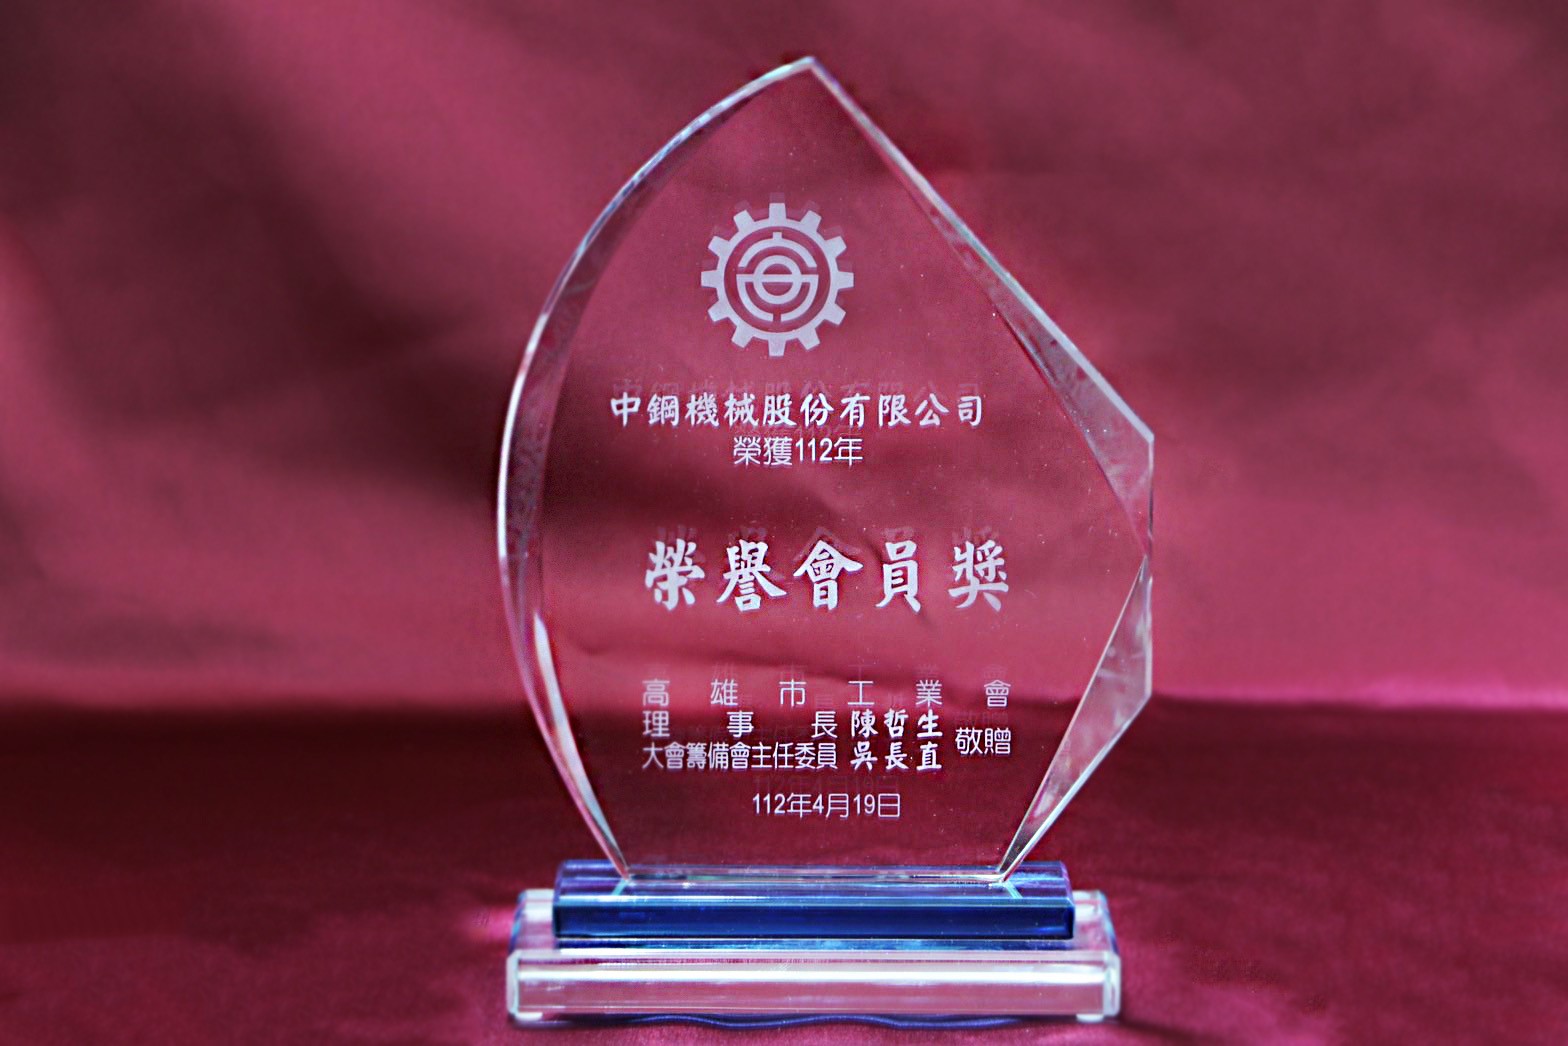 中機榮獲112年度高雄市工業會『榮譽會員獎』 殊榮